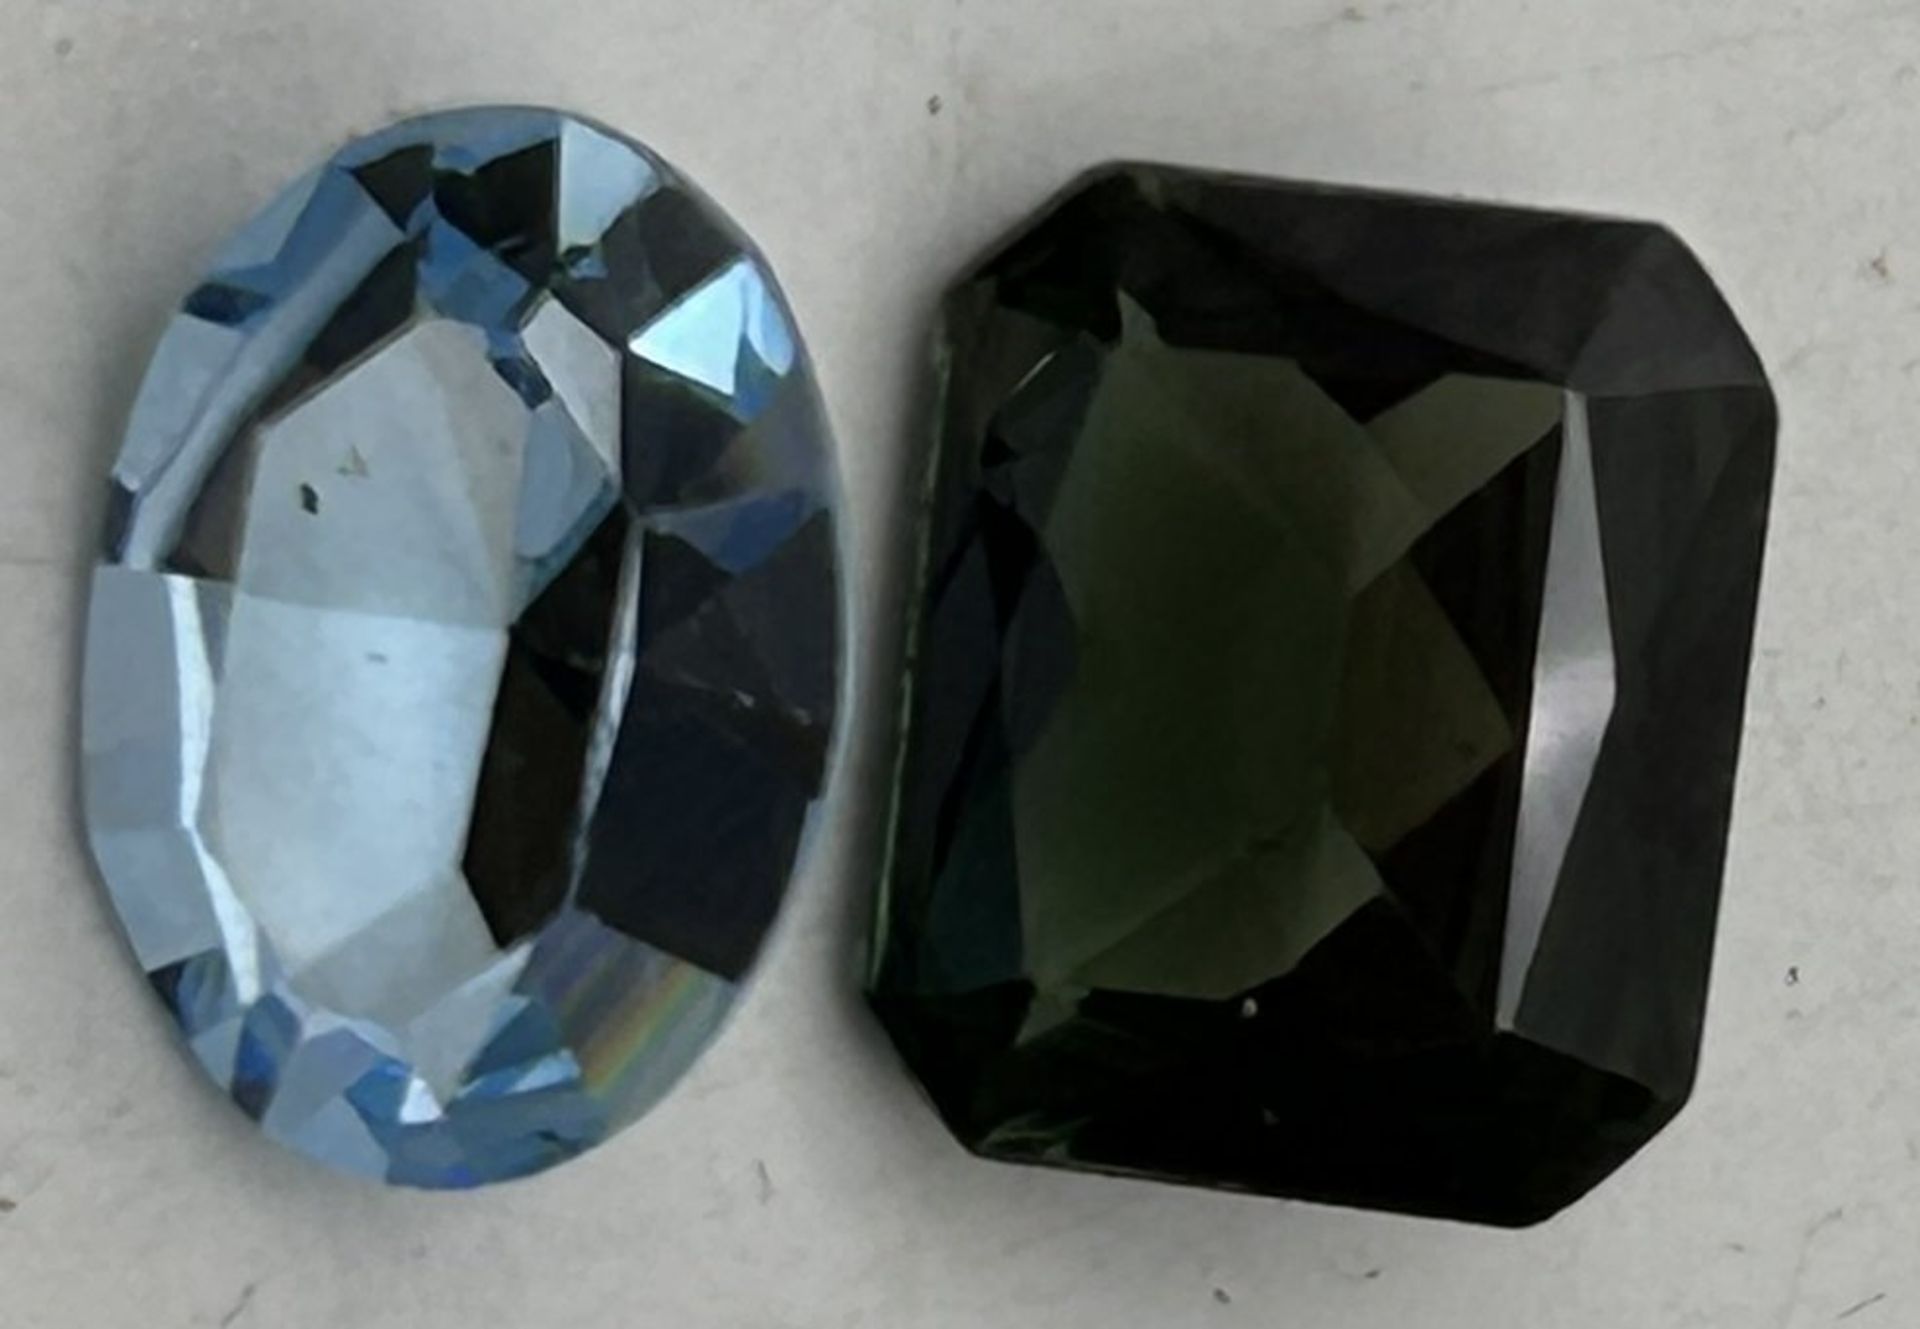 2 Edel-Steine, hellblau und grün, mit Schliff - Bild 2 aus 5